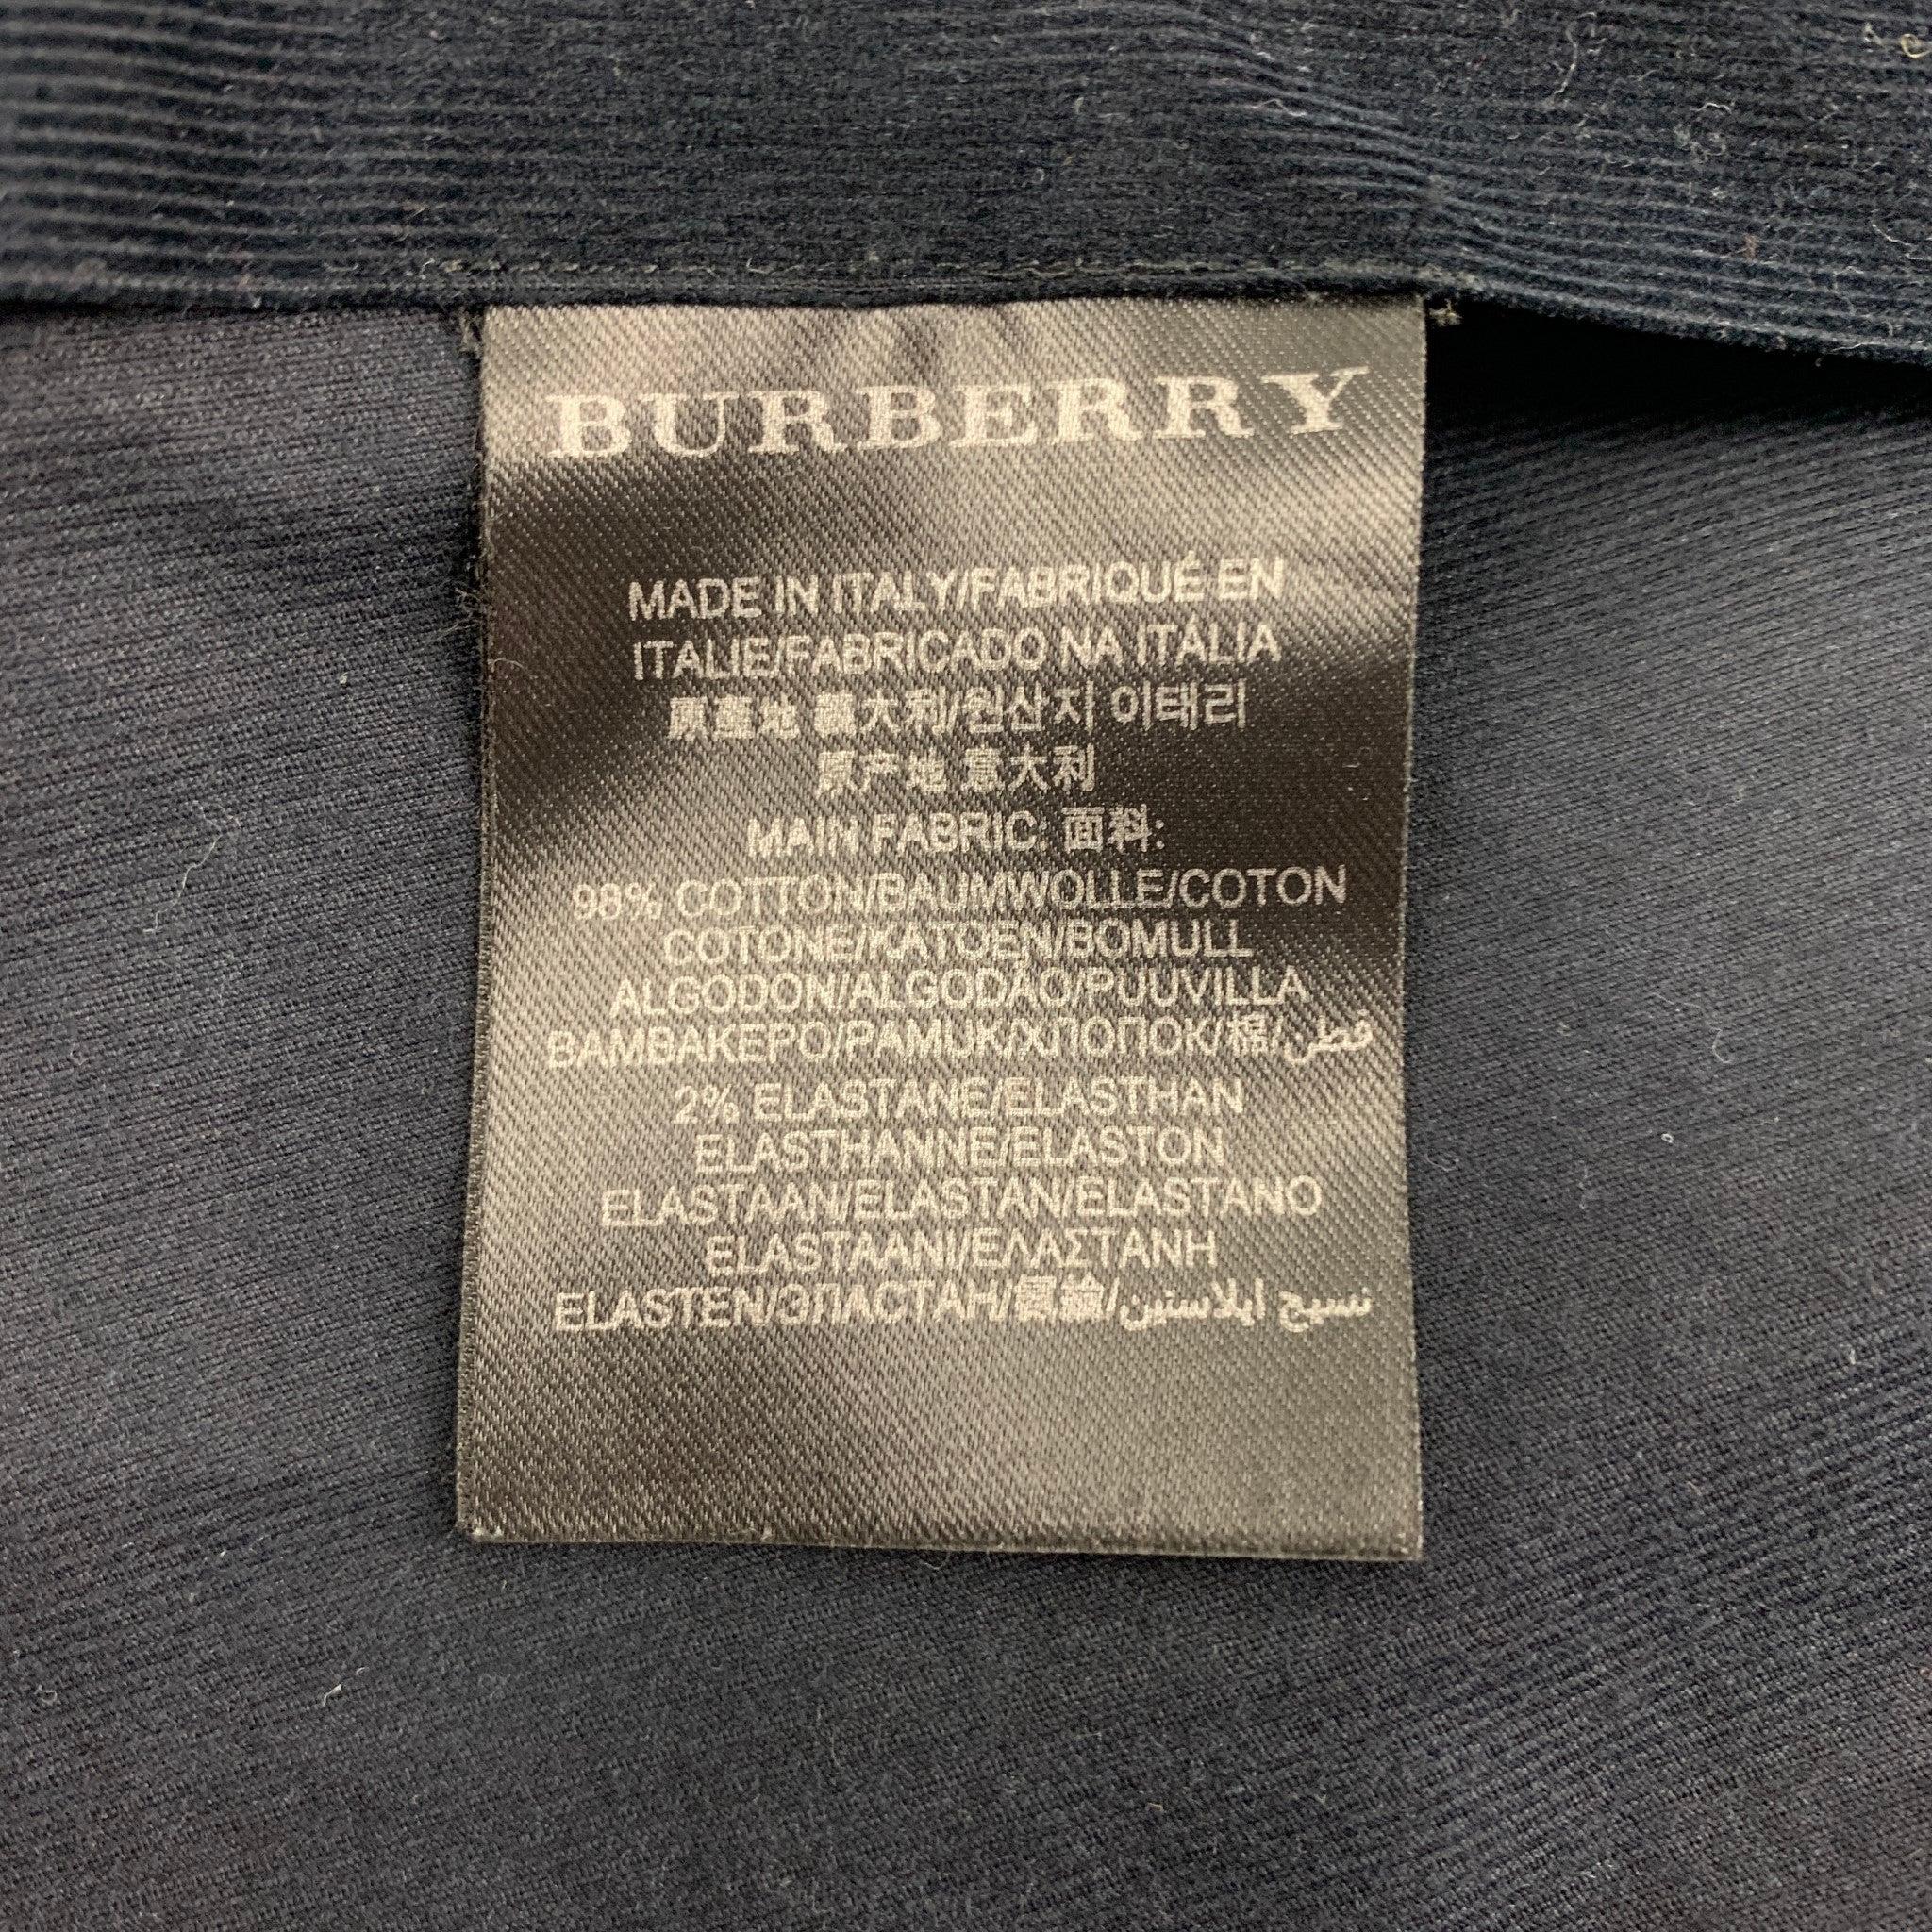 BURBERRY PRORSUM, chemise à manches longues en coton texturé bleu marine, taille XS Pour hommes en vente